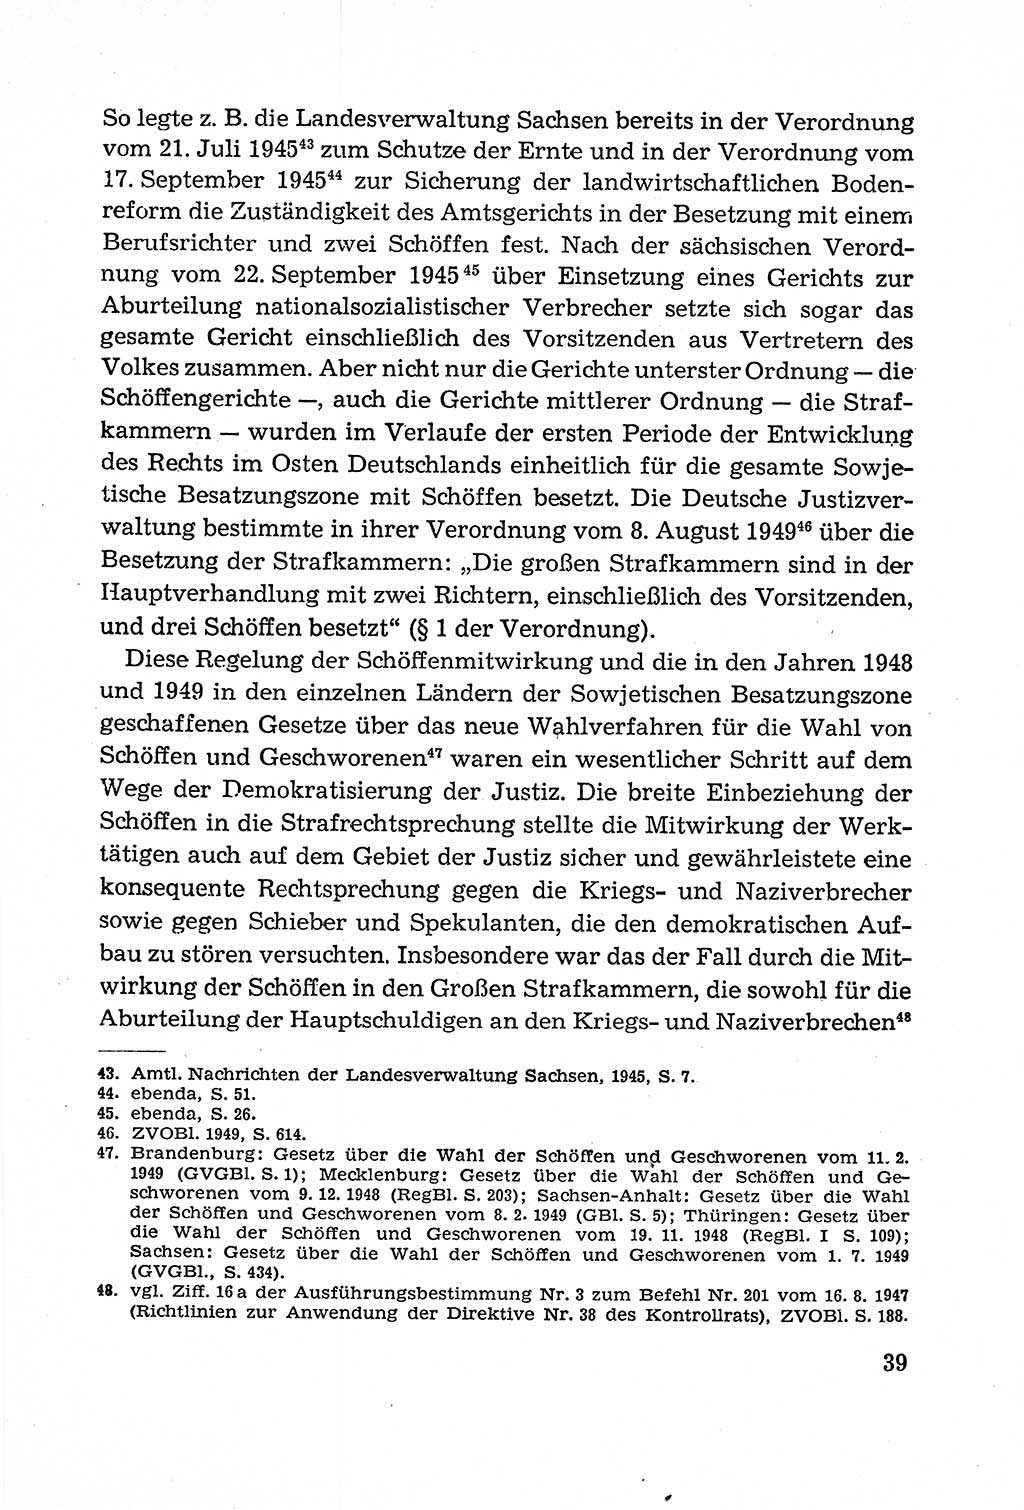 Leitfaden des Strafprozeßrechts der Deutschen Demokratischen Republik (DDR) 1959, Seite 39 (LF StPR DDR 1959, S. 39)